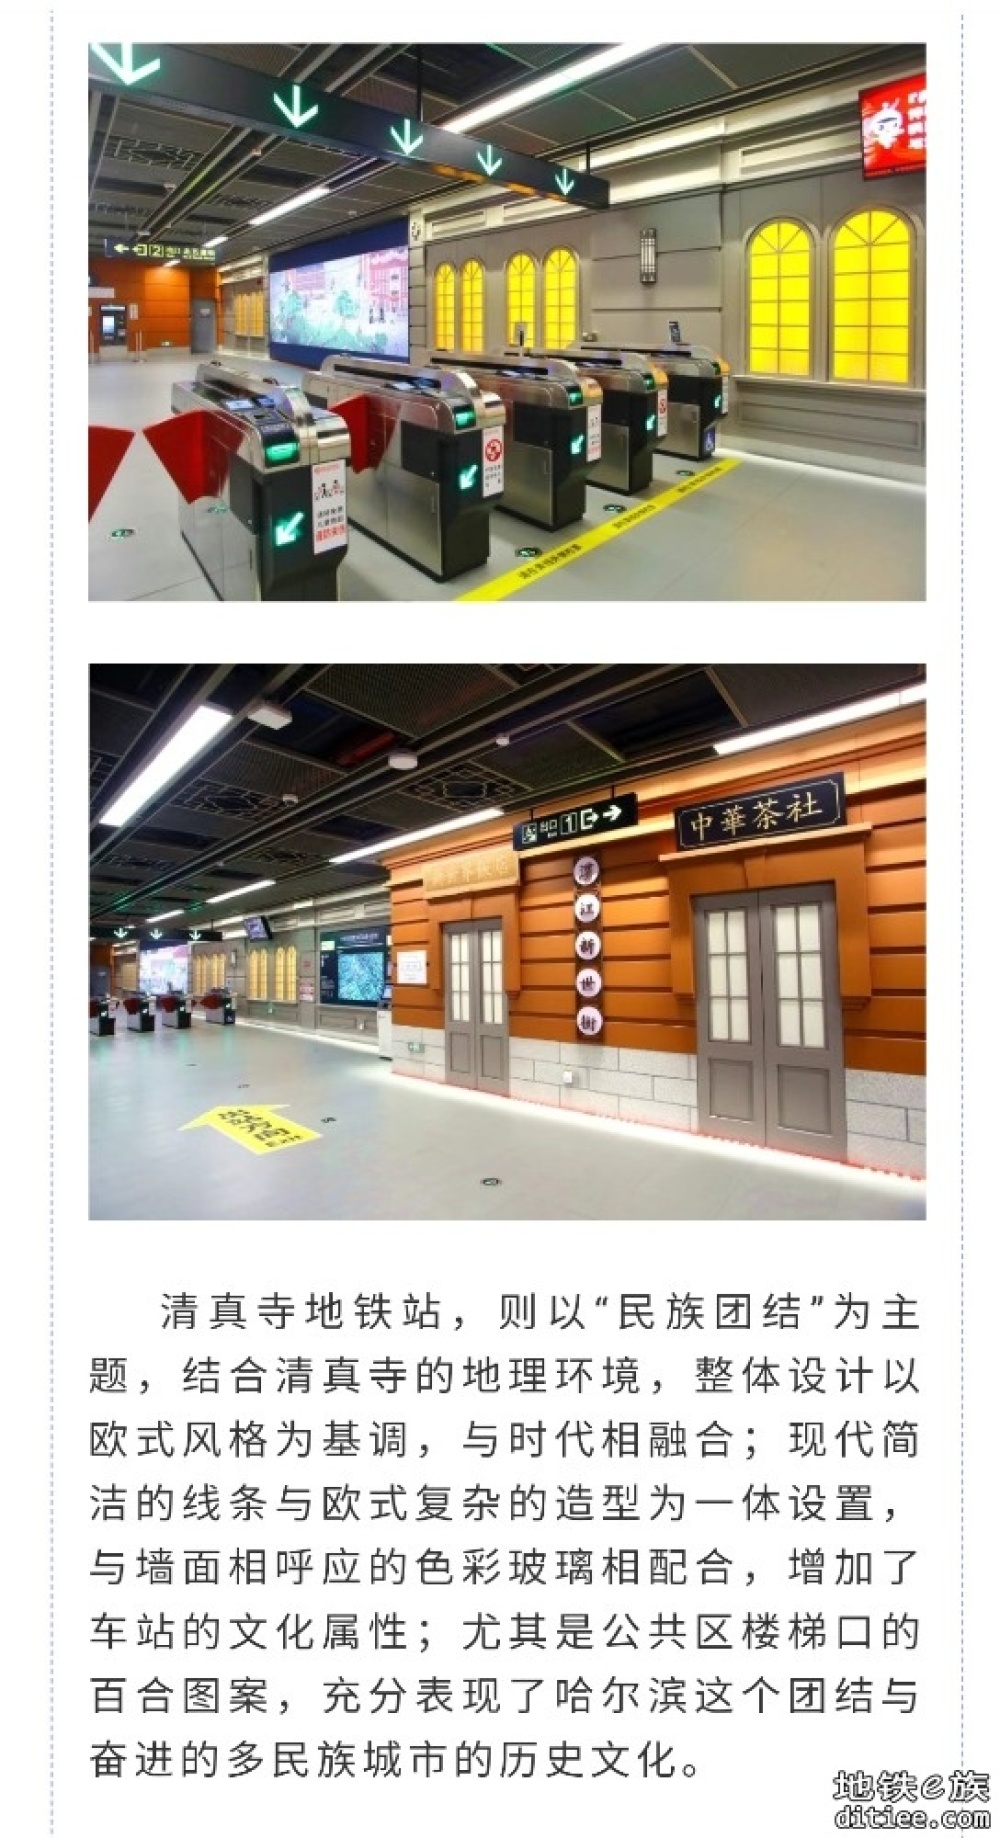 哈尔滨地铁3号线西北环老道外段开通初期运营